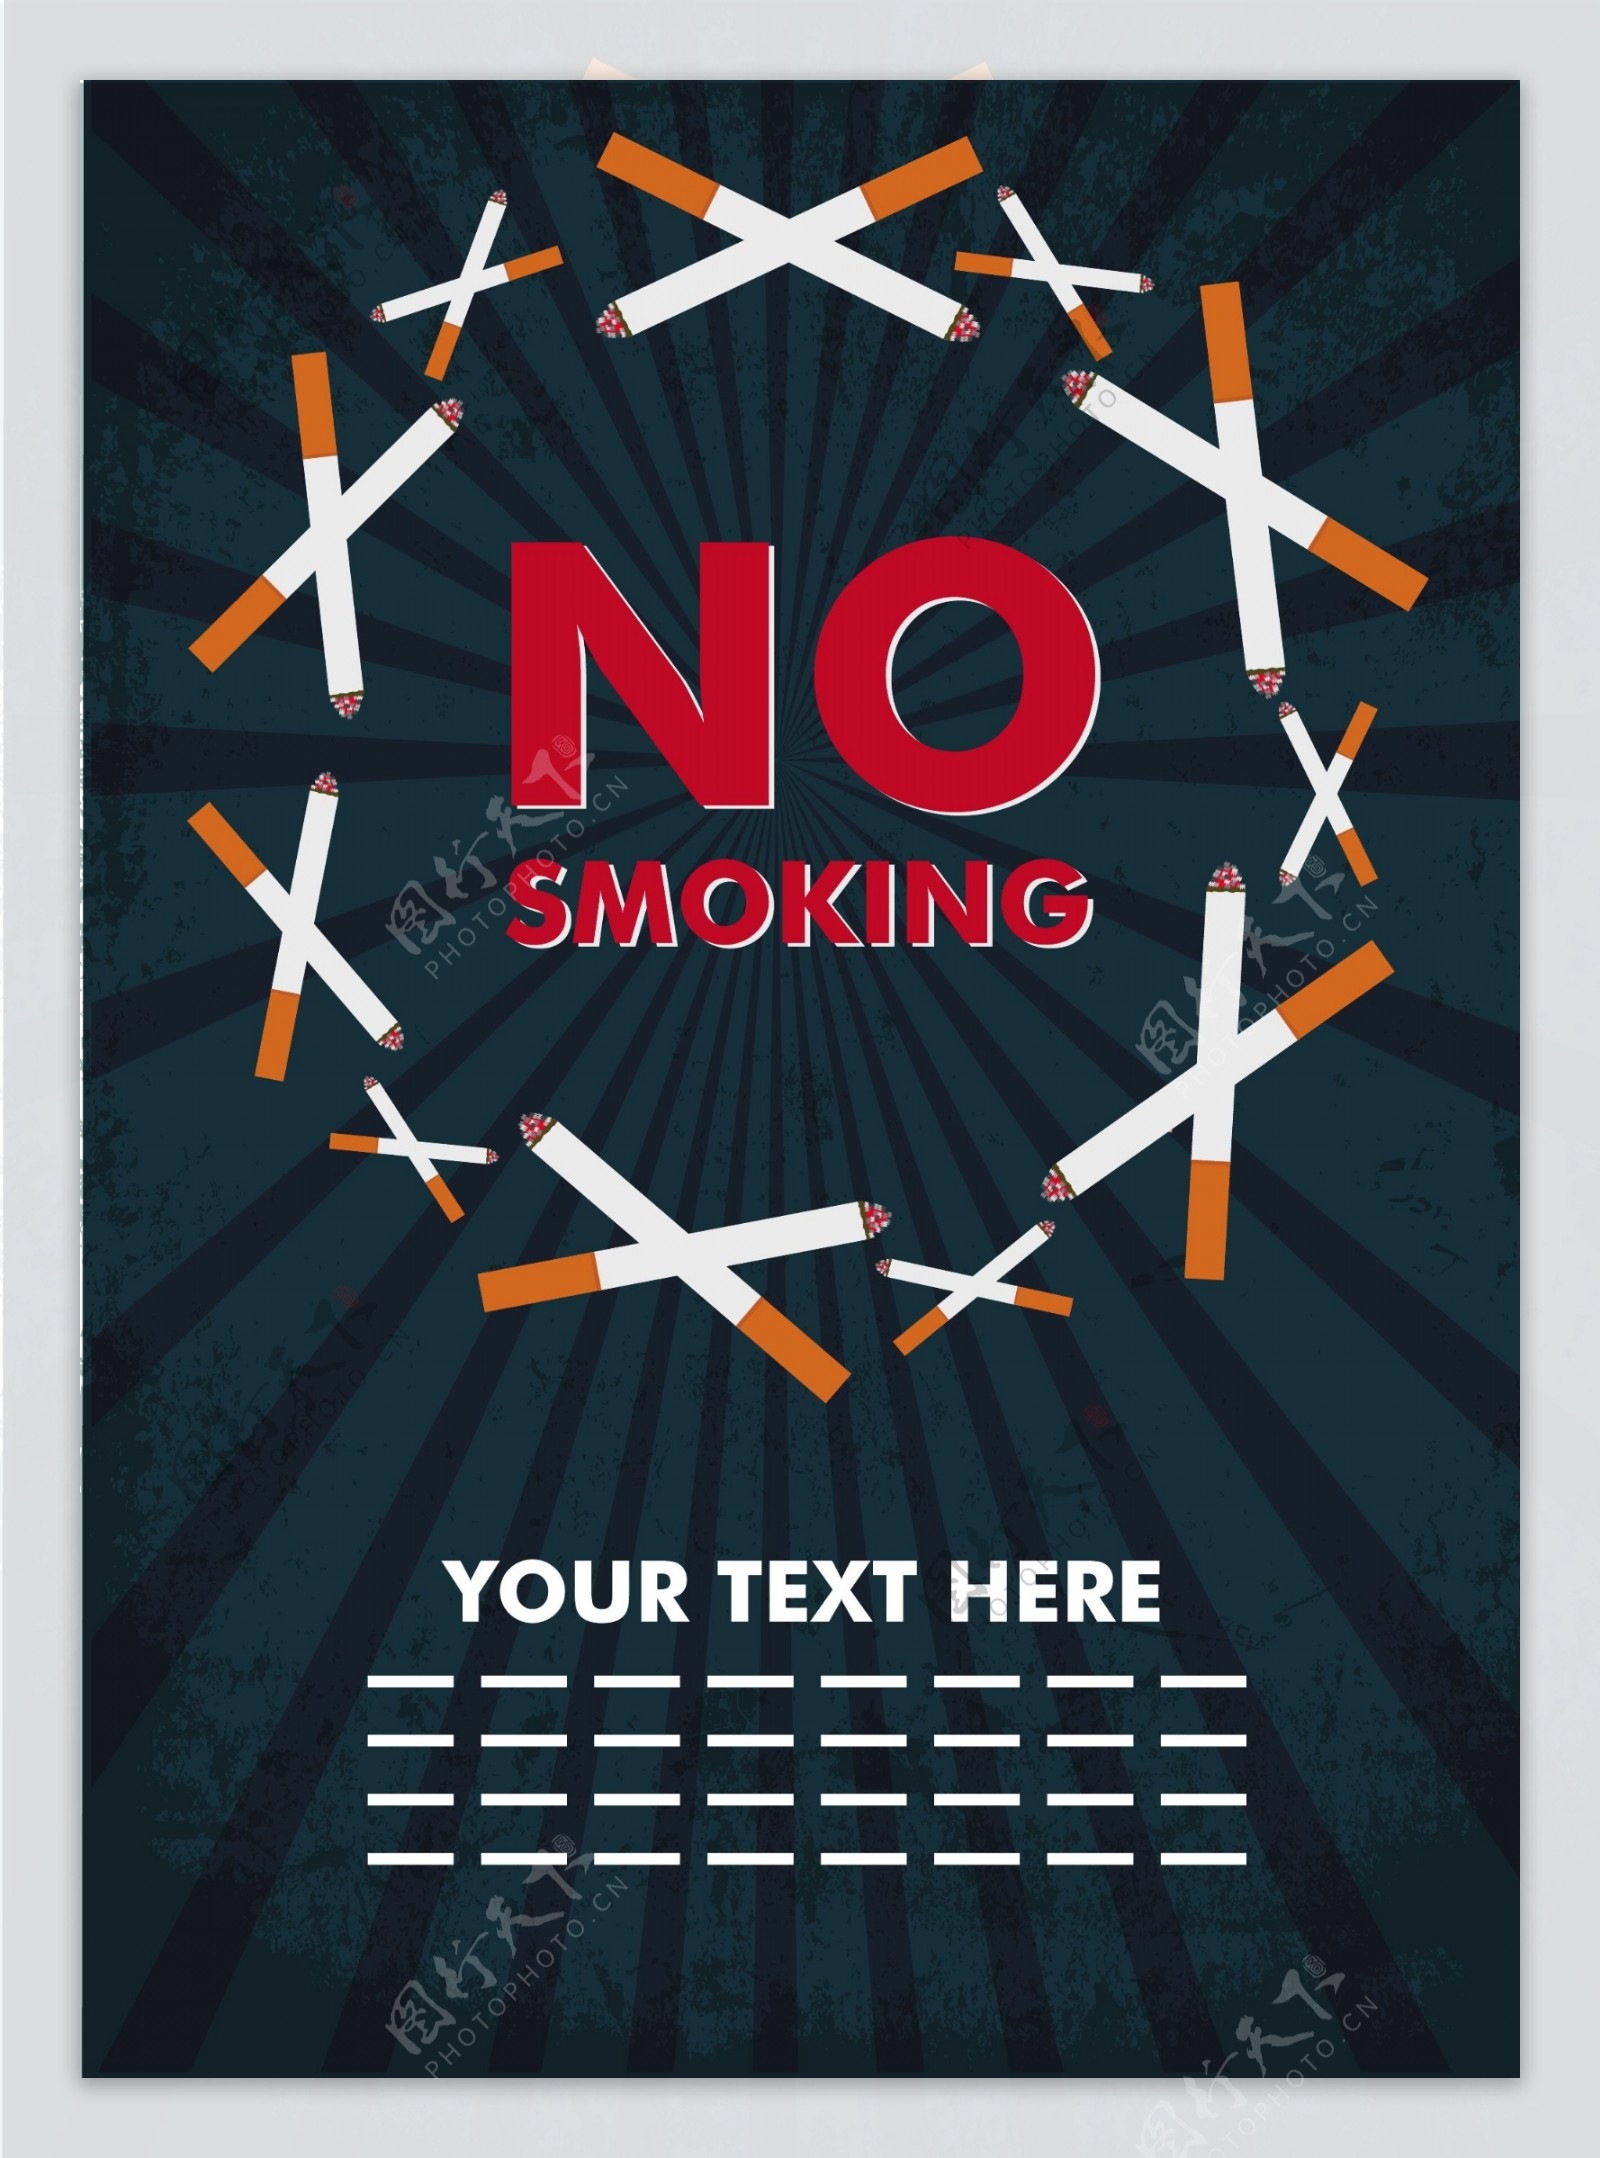 戒烟日宣传海报材料